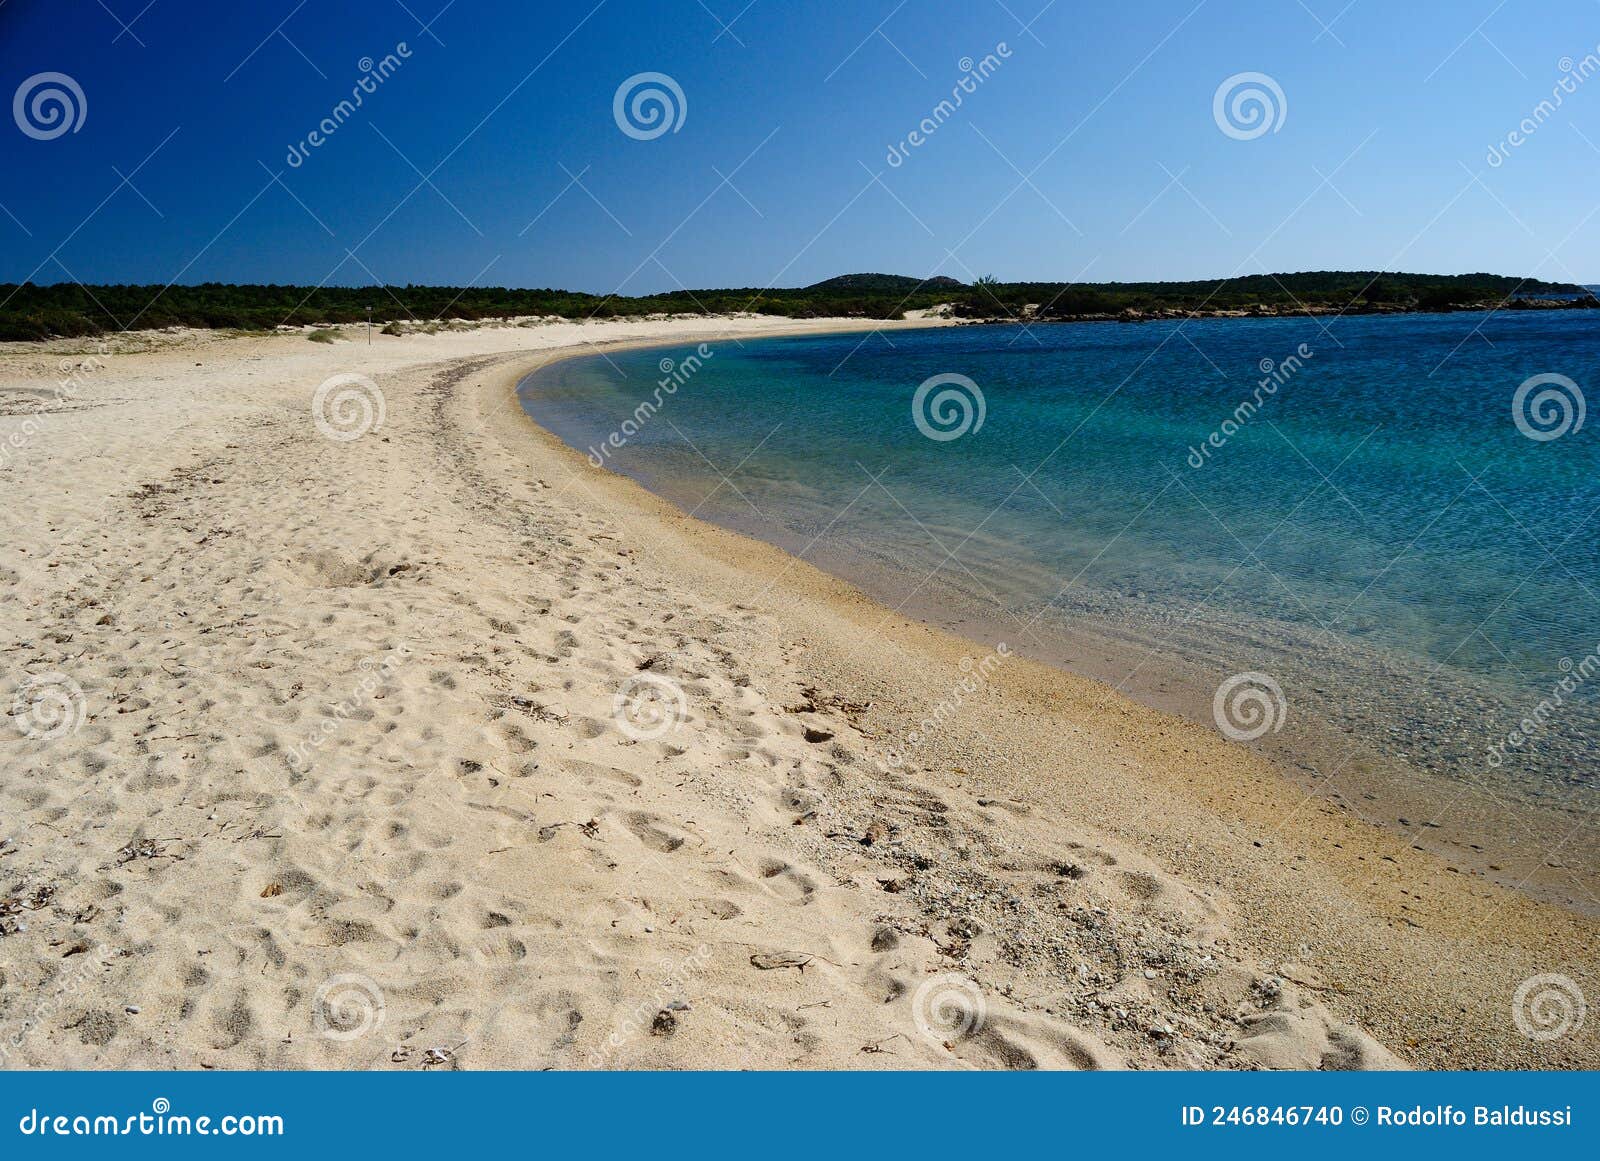 view of razza di junco beach, costa smeralda